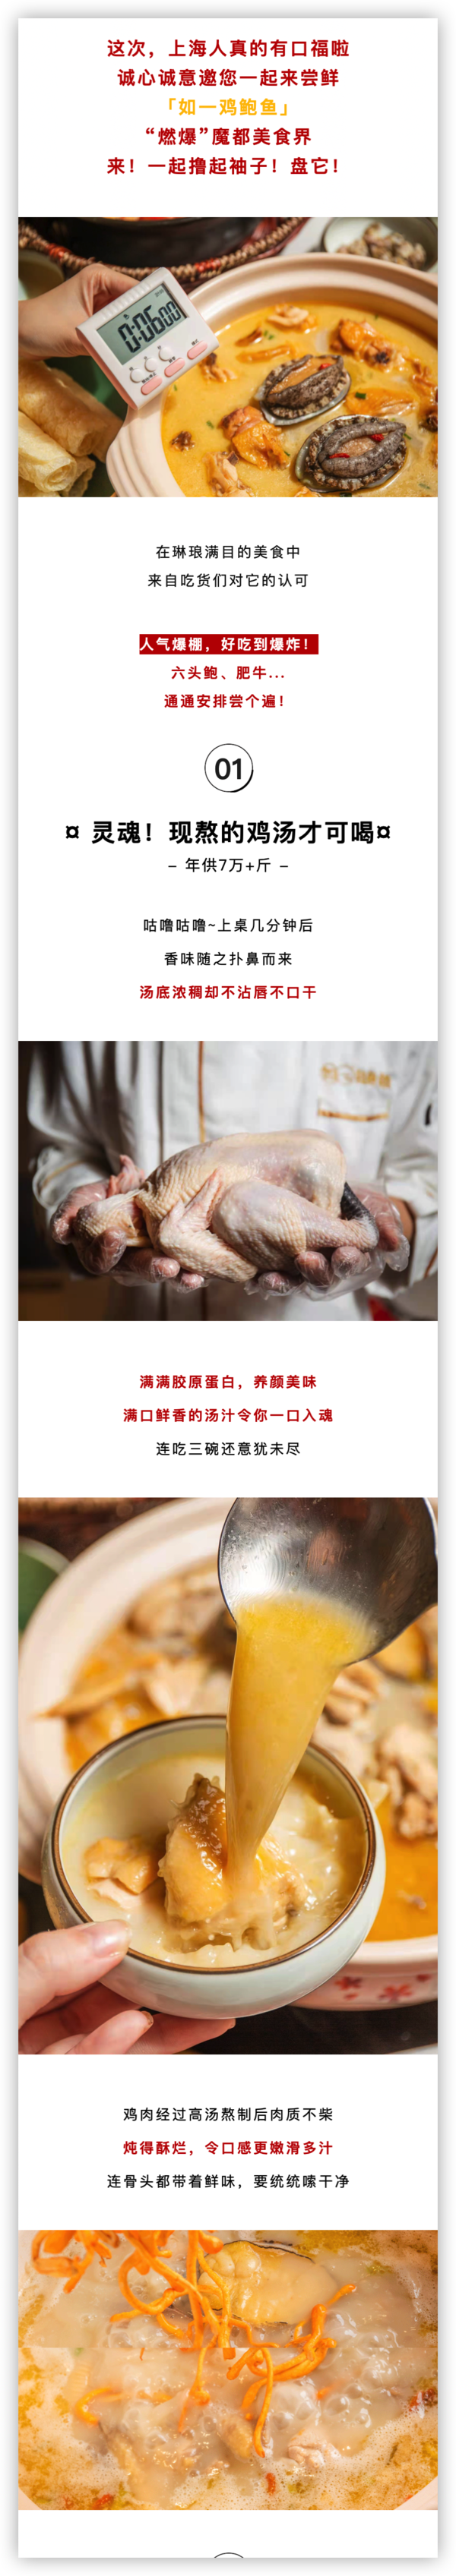 上海环球港+世博源店 如一鸡鲍鱼·粤式煲汤 3-4人餐